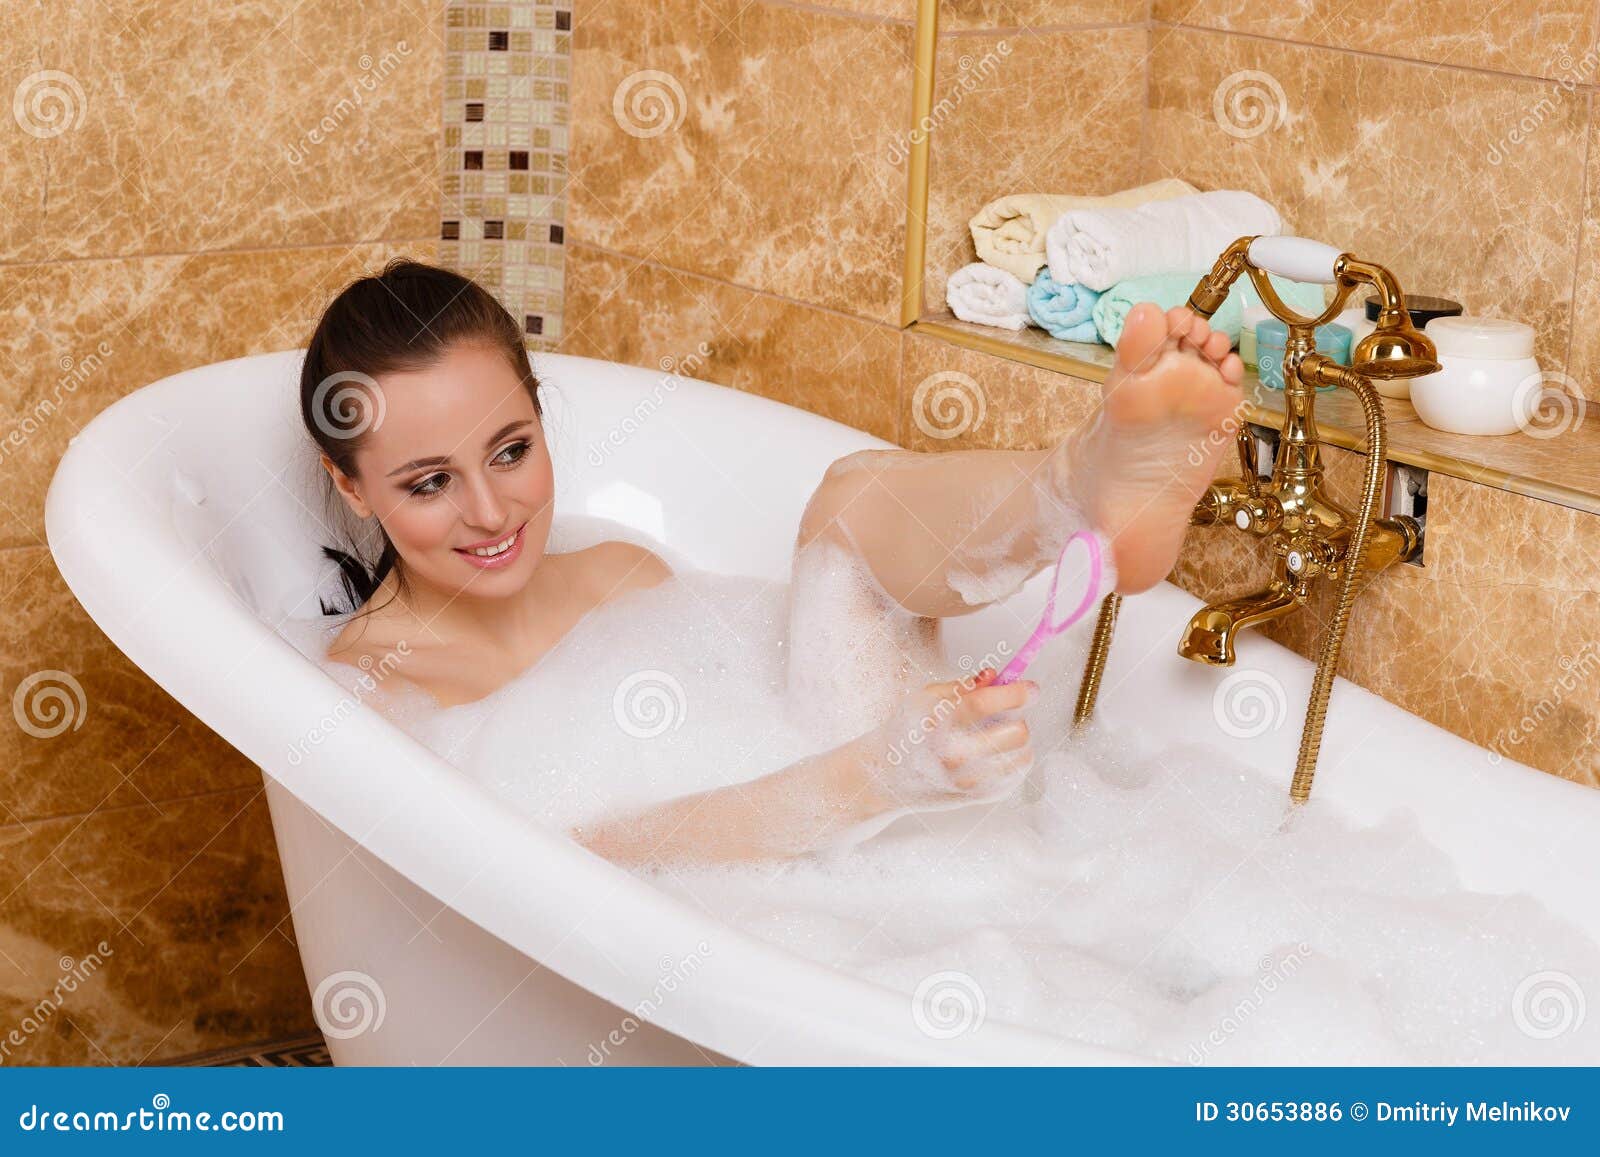 Молодая девушка купается в ванной (8 фото)